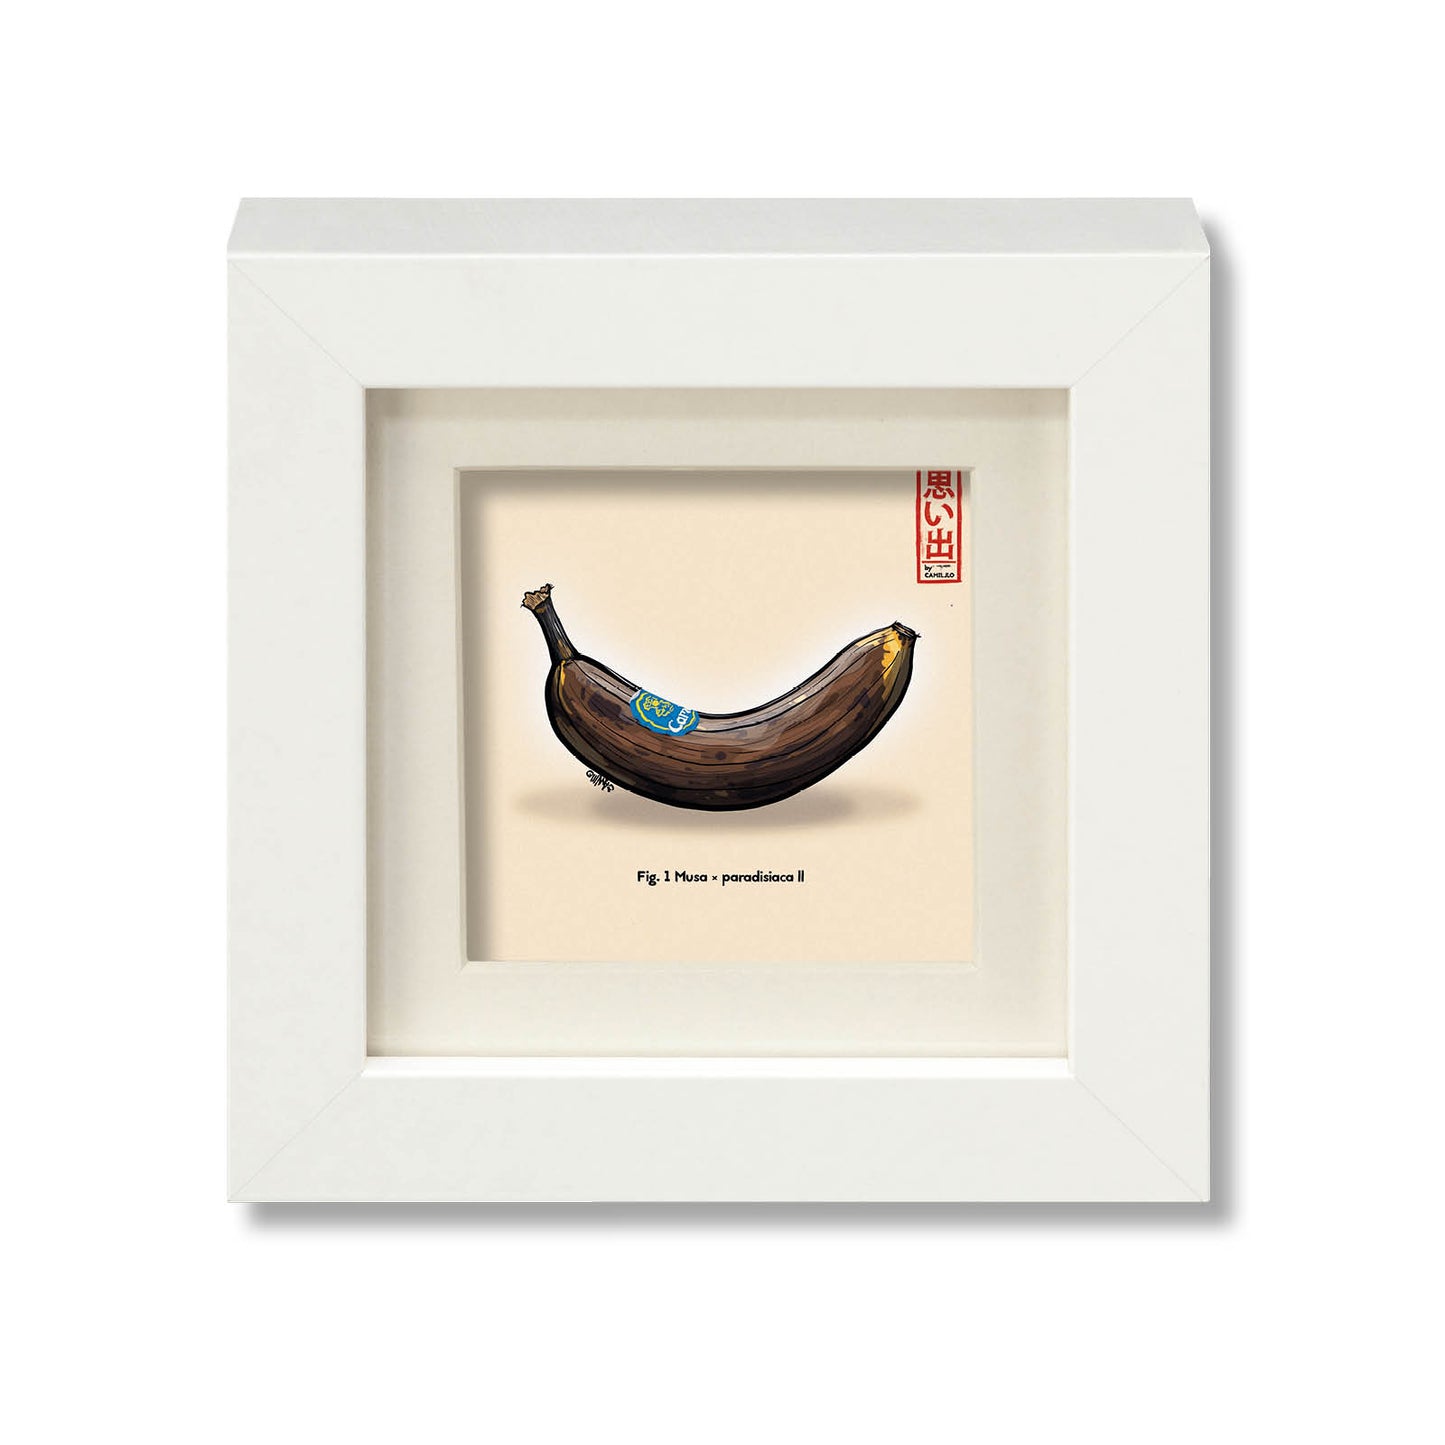 Giclée-Druck einer reifen Banane - Rockstar unter den Früchten - weißer Rahmen - kleine Größe